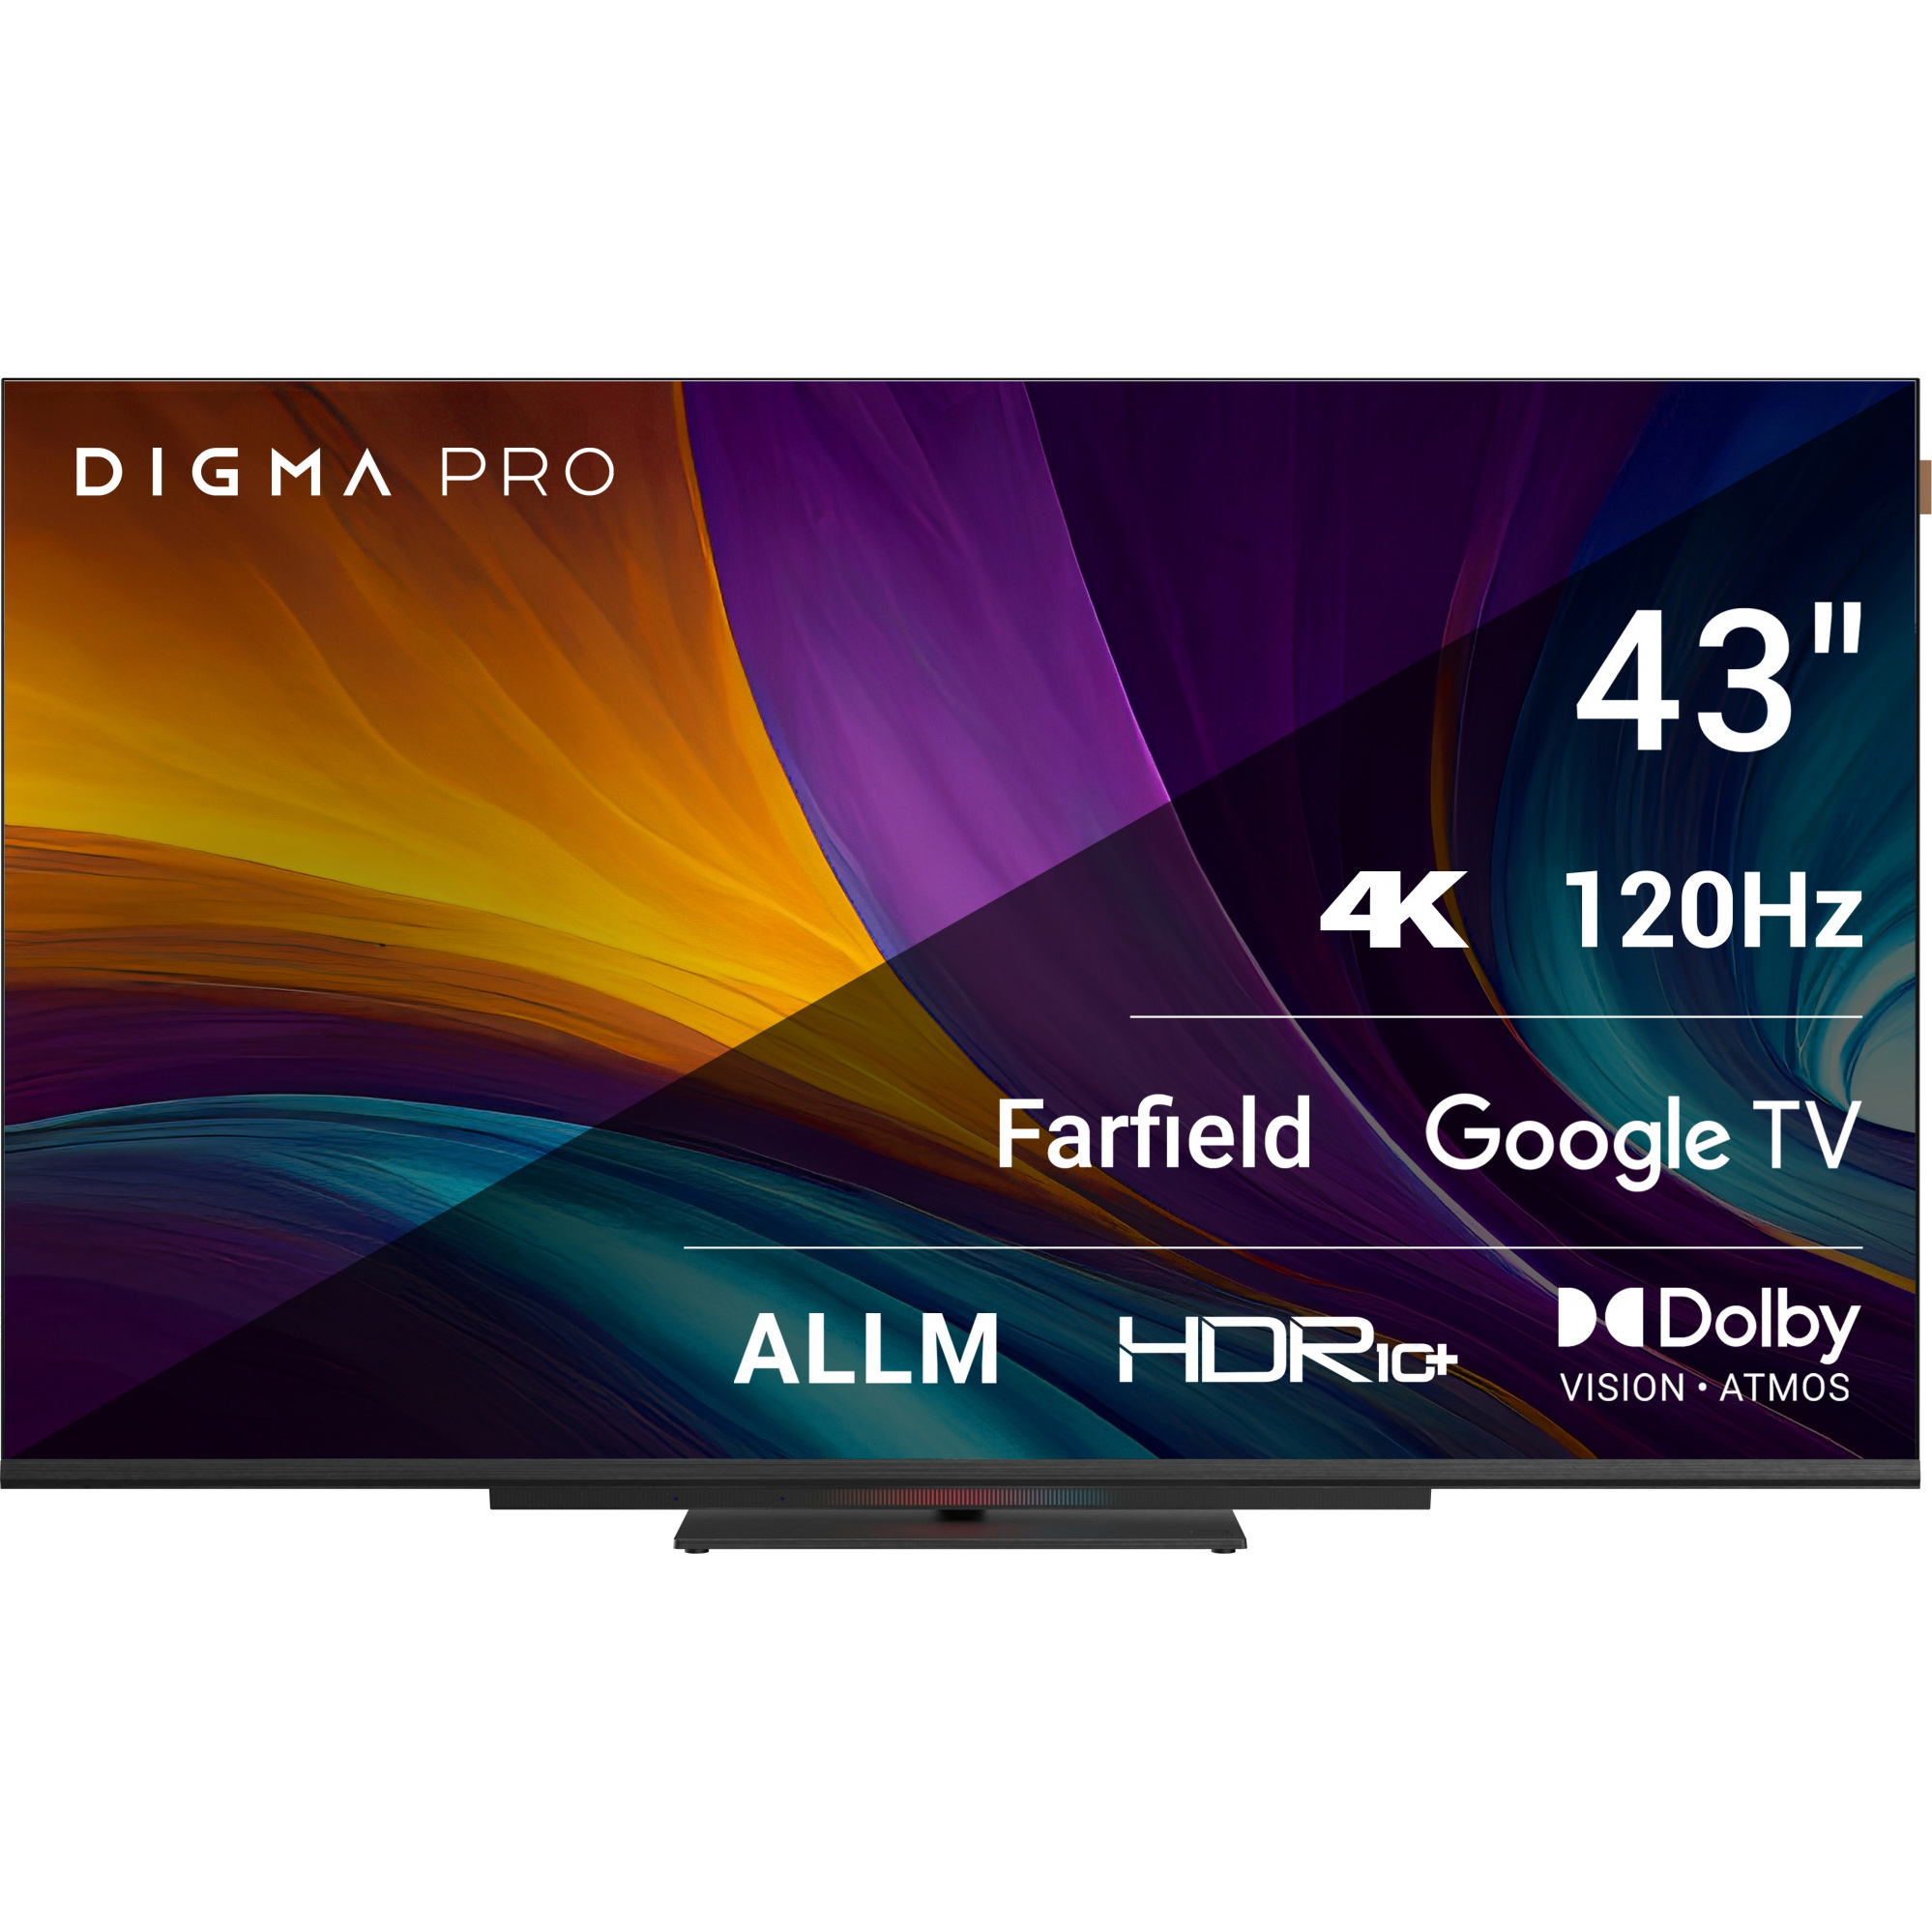 Телевизор Digma Pro 43 43C телевизор led digma pro google tv uhd 43c черный черный